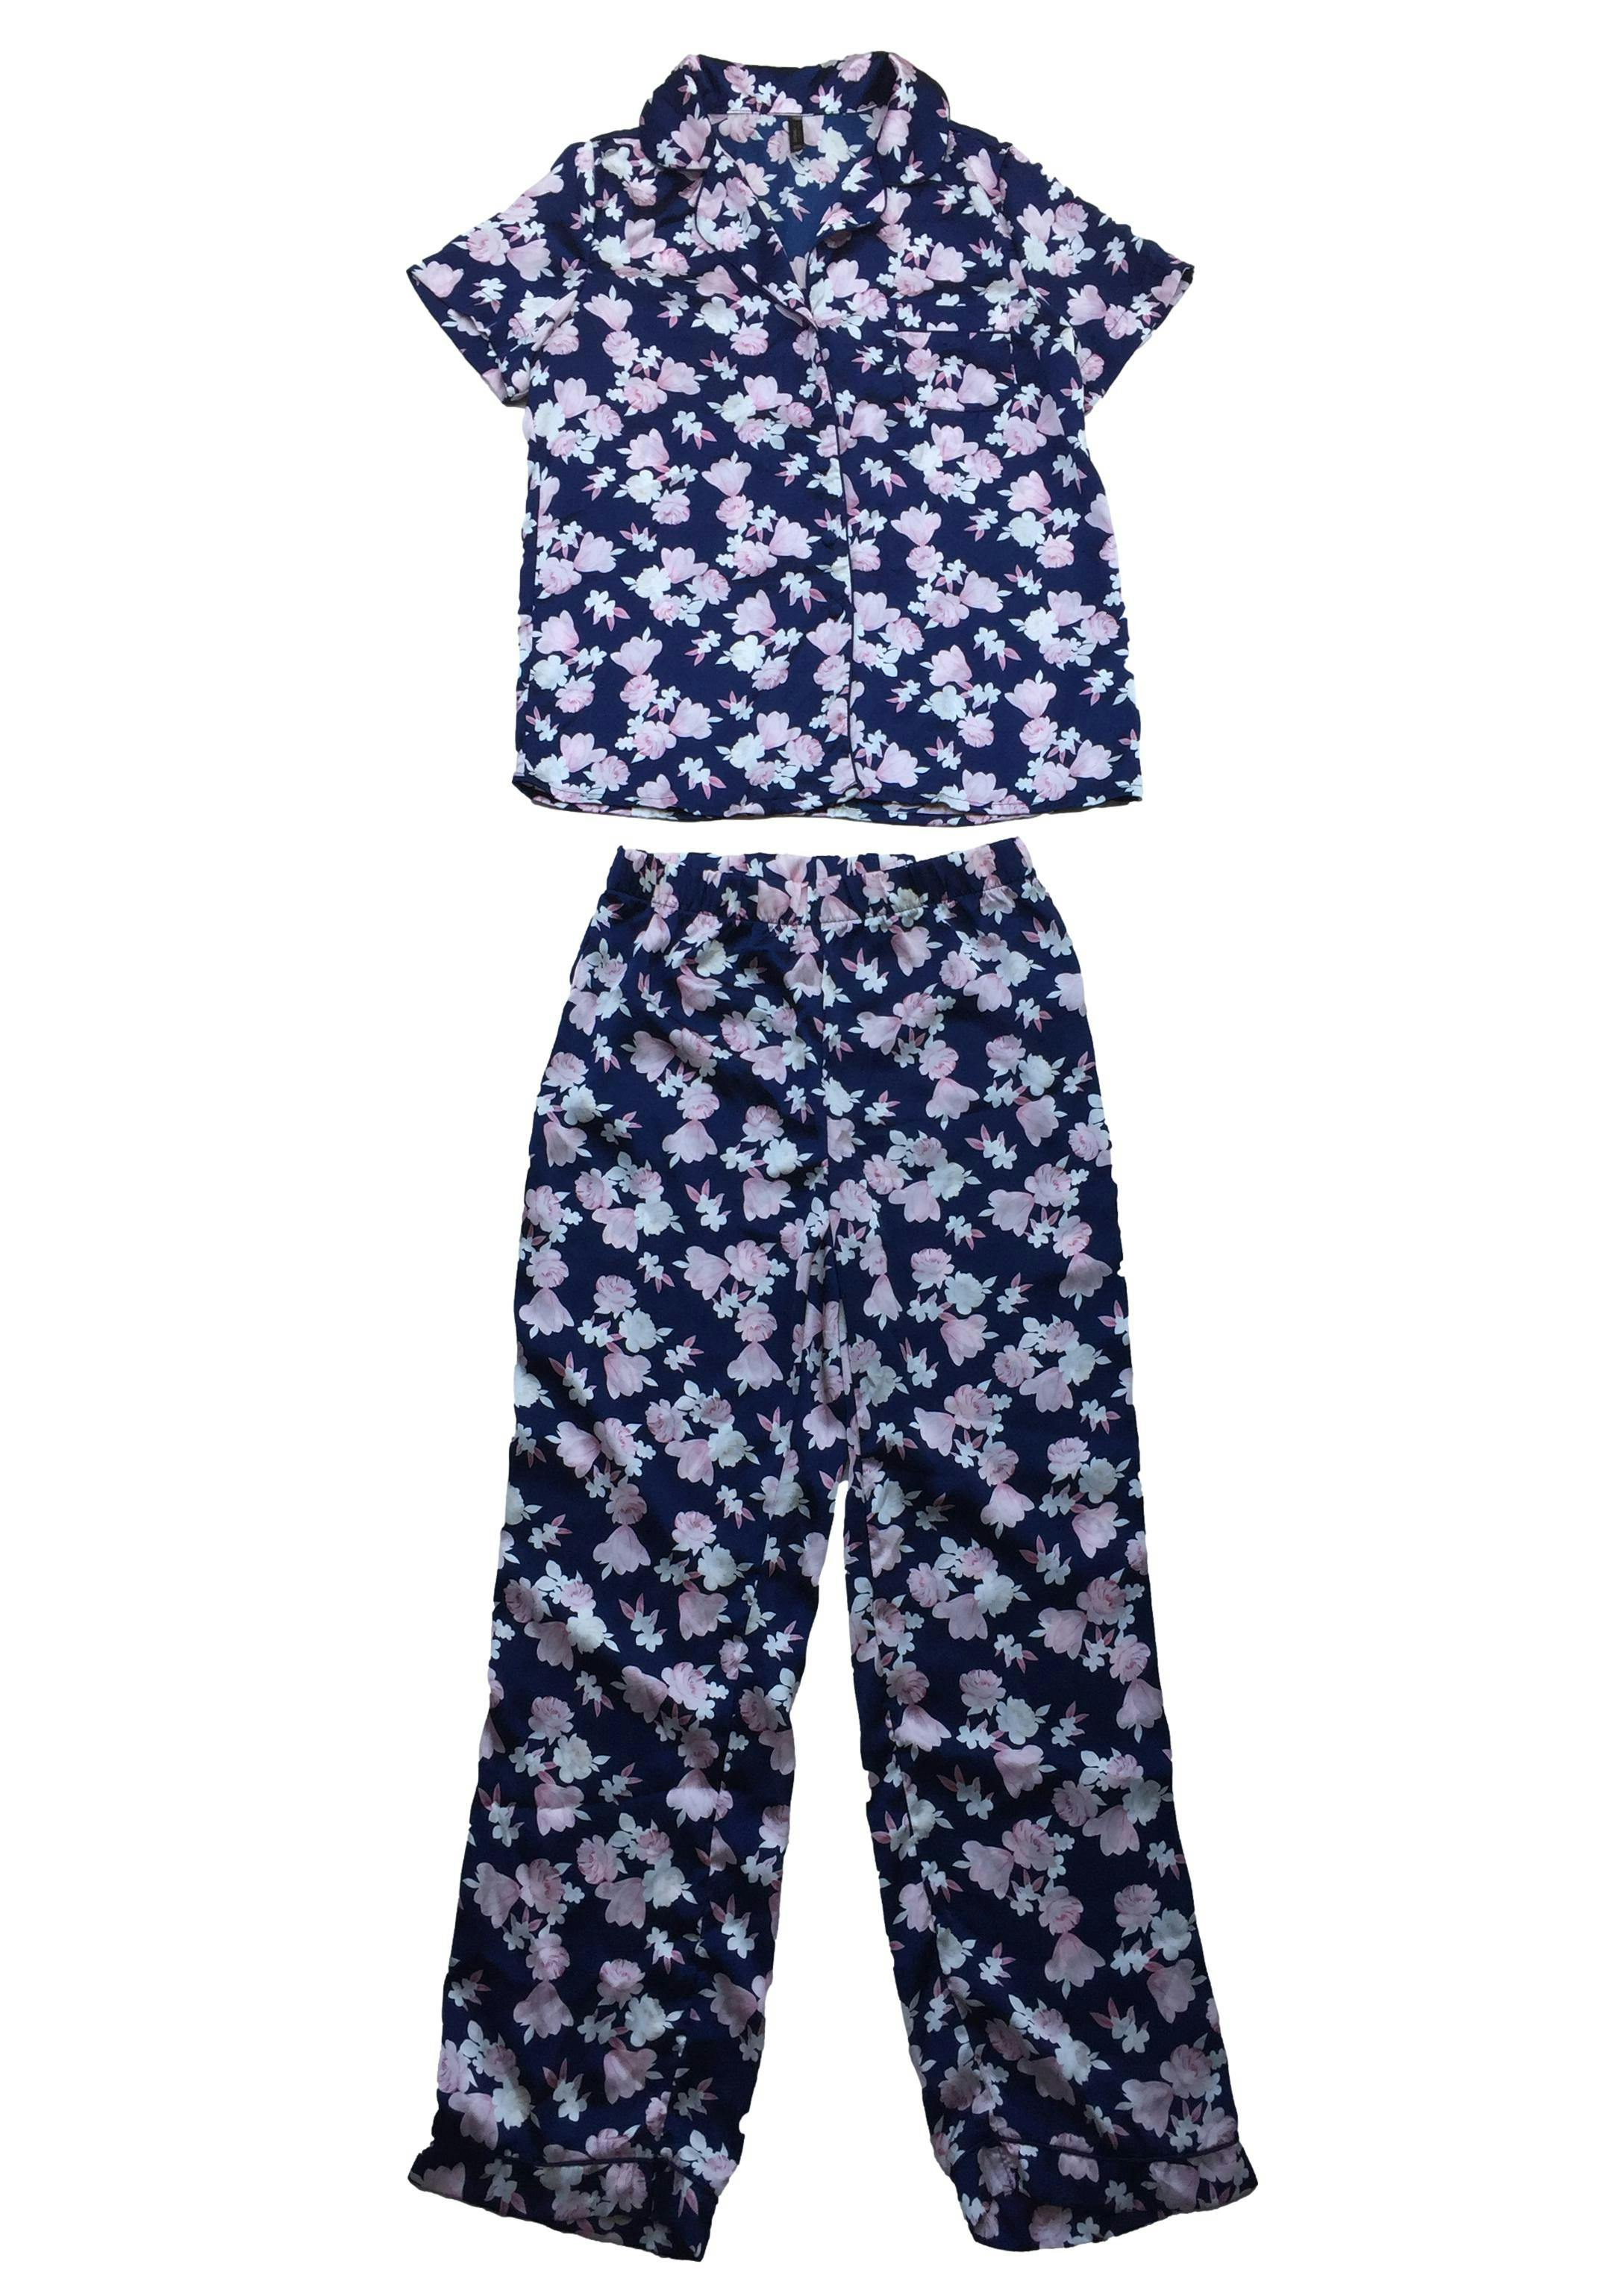 Pijama sedosa azul con flores rosa y crema. Busto 100cm Largo 62cm Cintura 68cm Largo pantalón 97cm